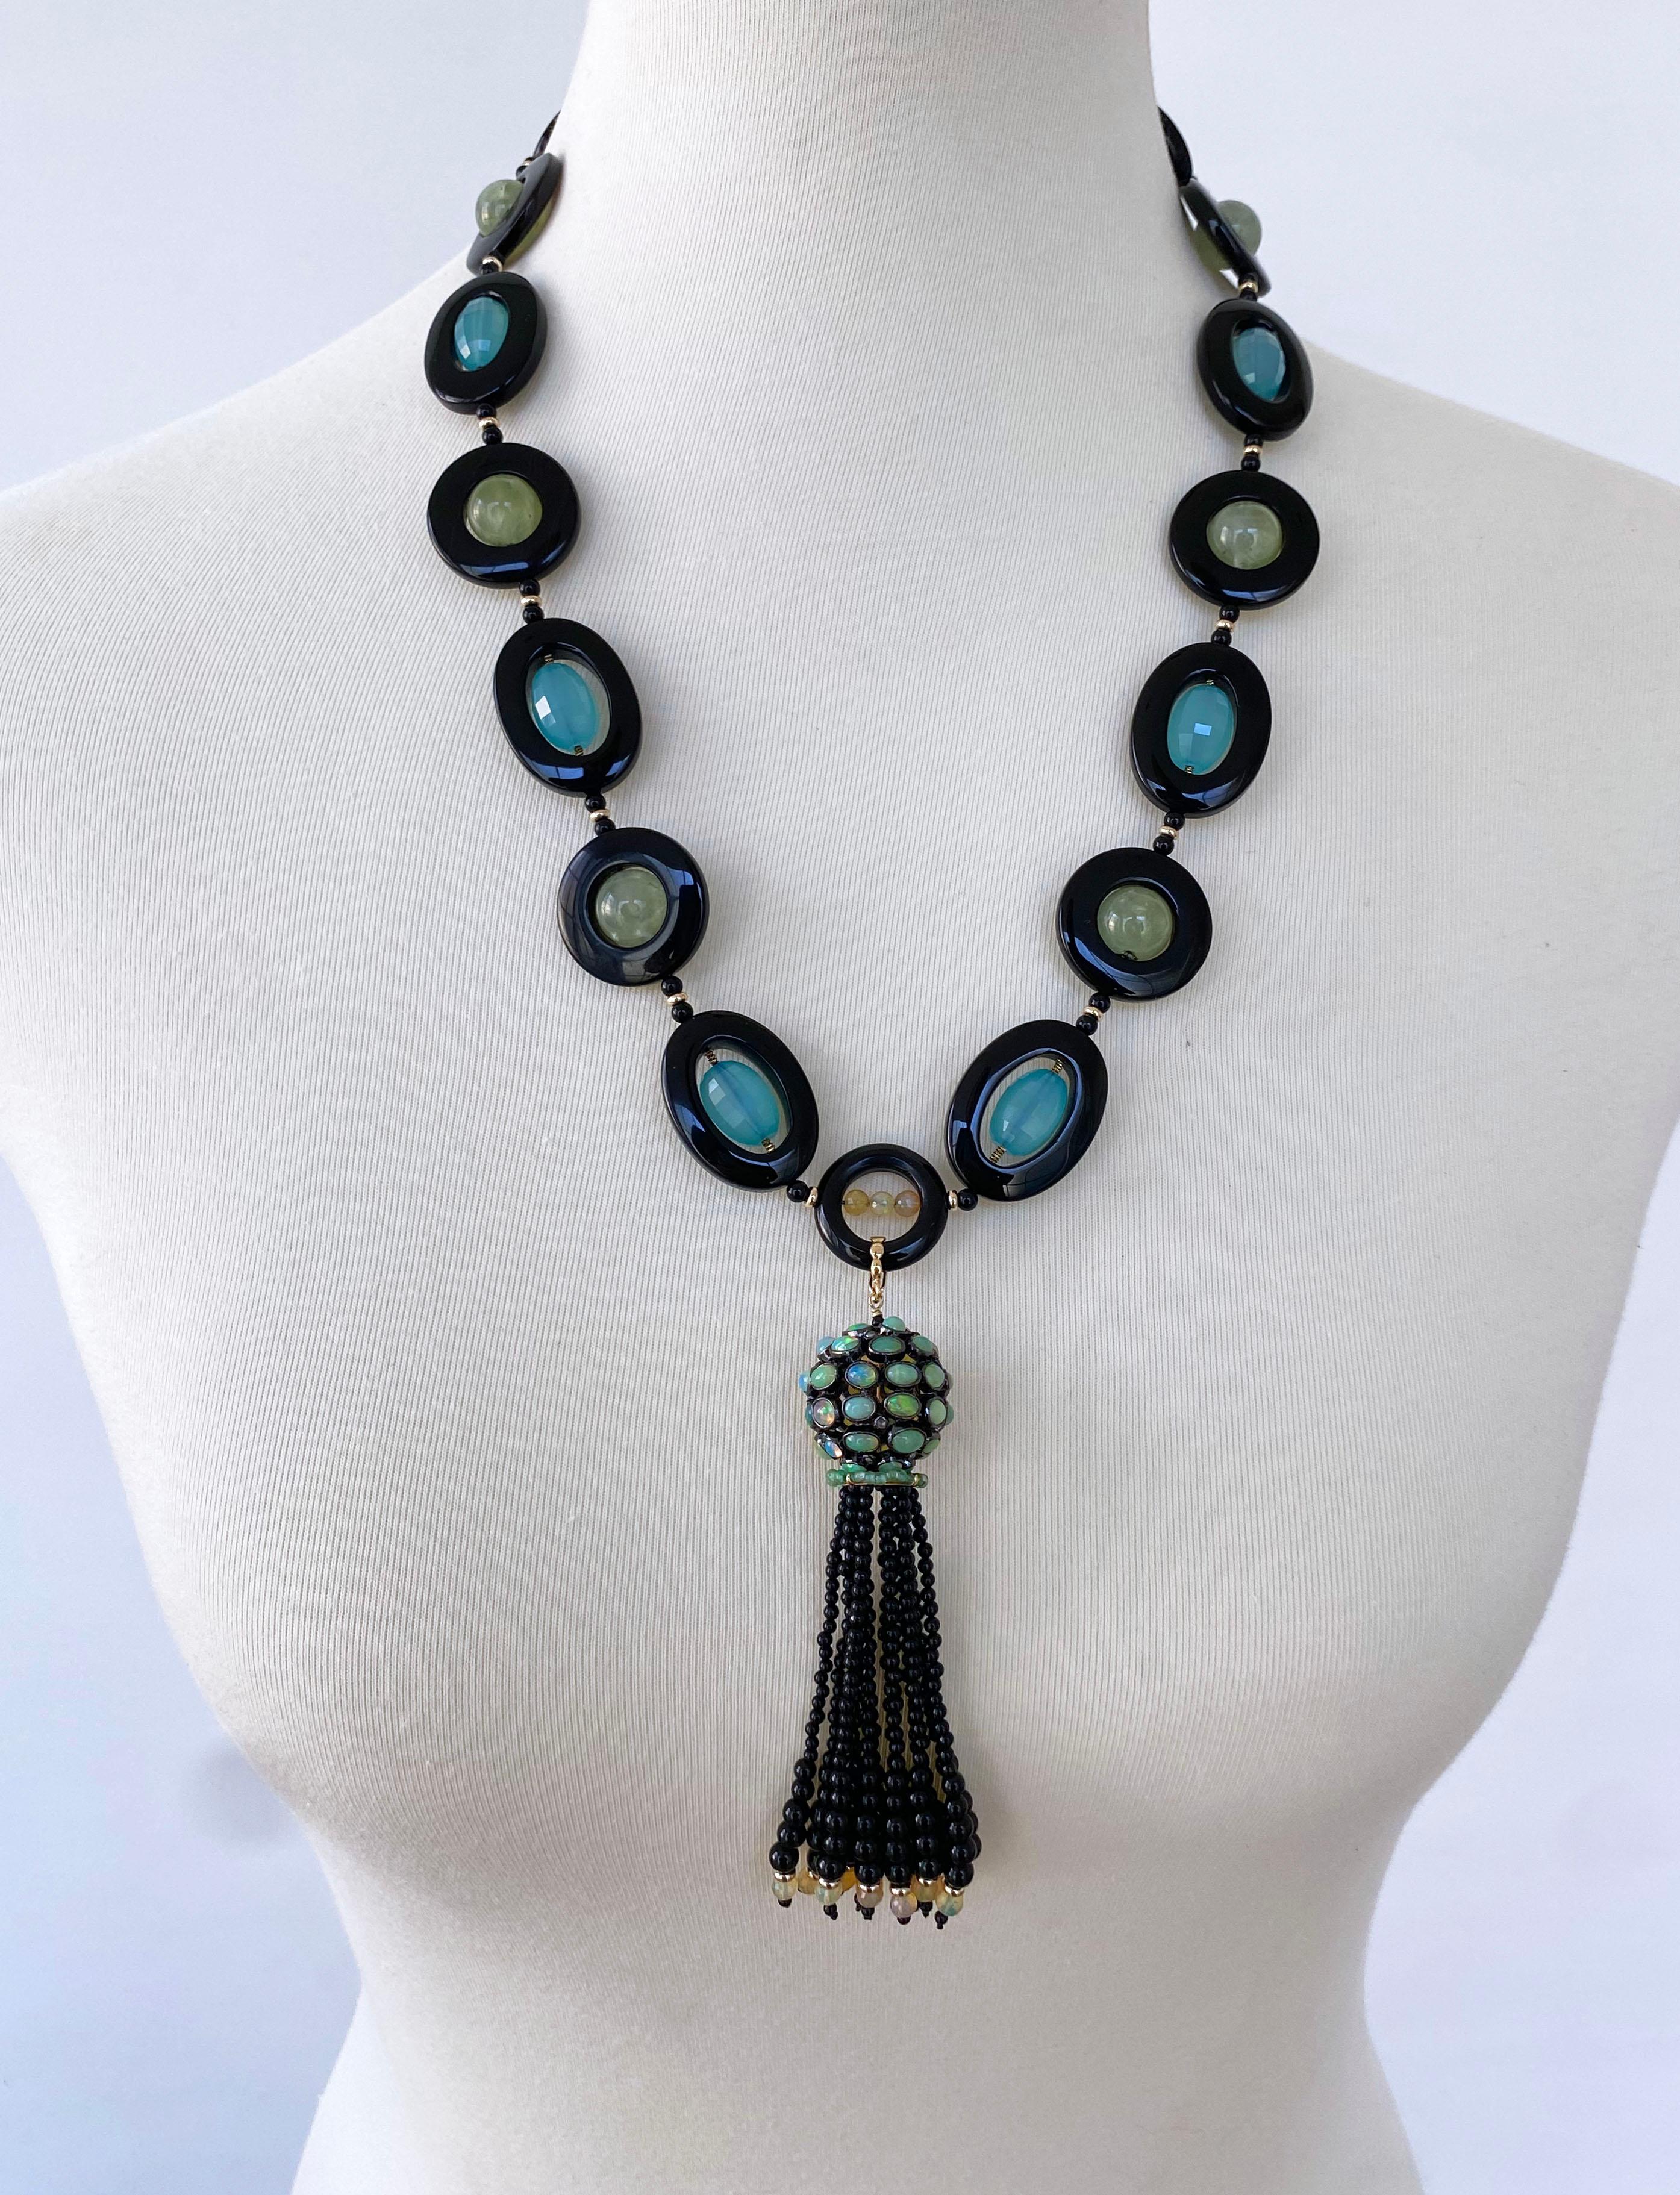 Magnifique pièce unique de Marina J.
Ce collier est composé d'une calcédoine bleue, d'une améthyste verte et d'un onyx noir, le tout orné d'un fermoir en or jaune 14 carats.

Grâce à la semi translucidité naturelle de la pierre, la calcédoine bleue